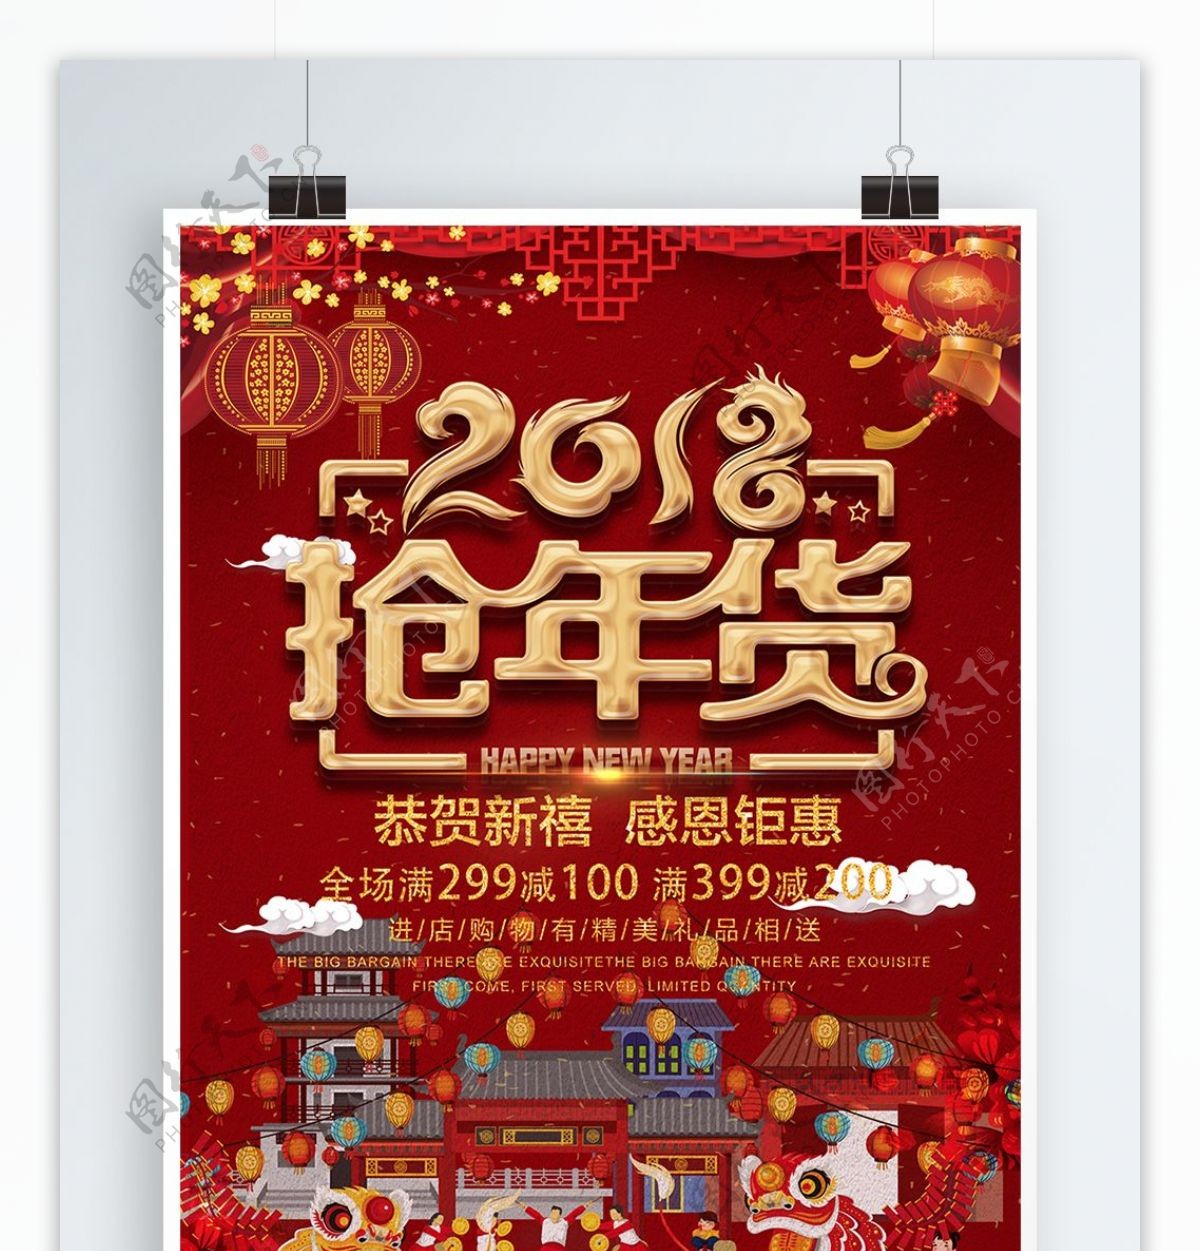 红金色2018中国好年货年货节海报